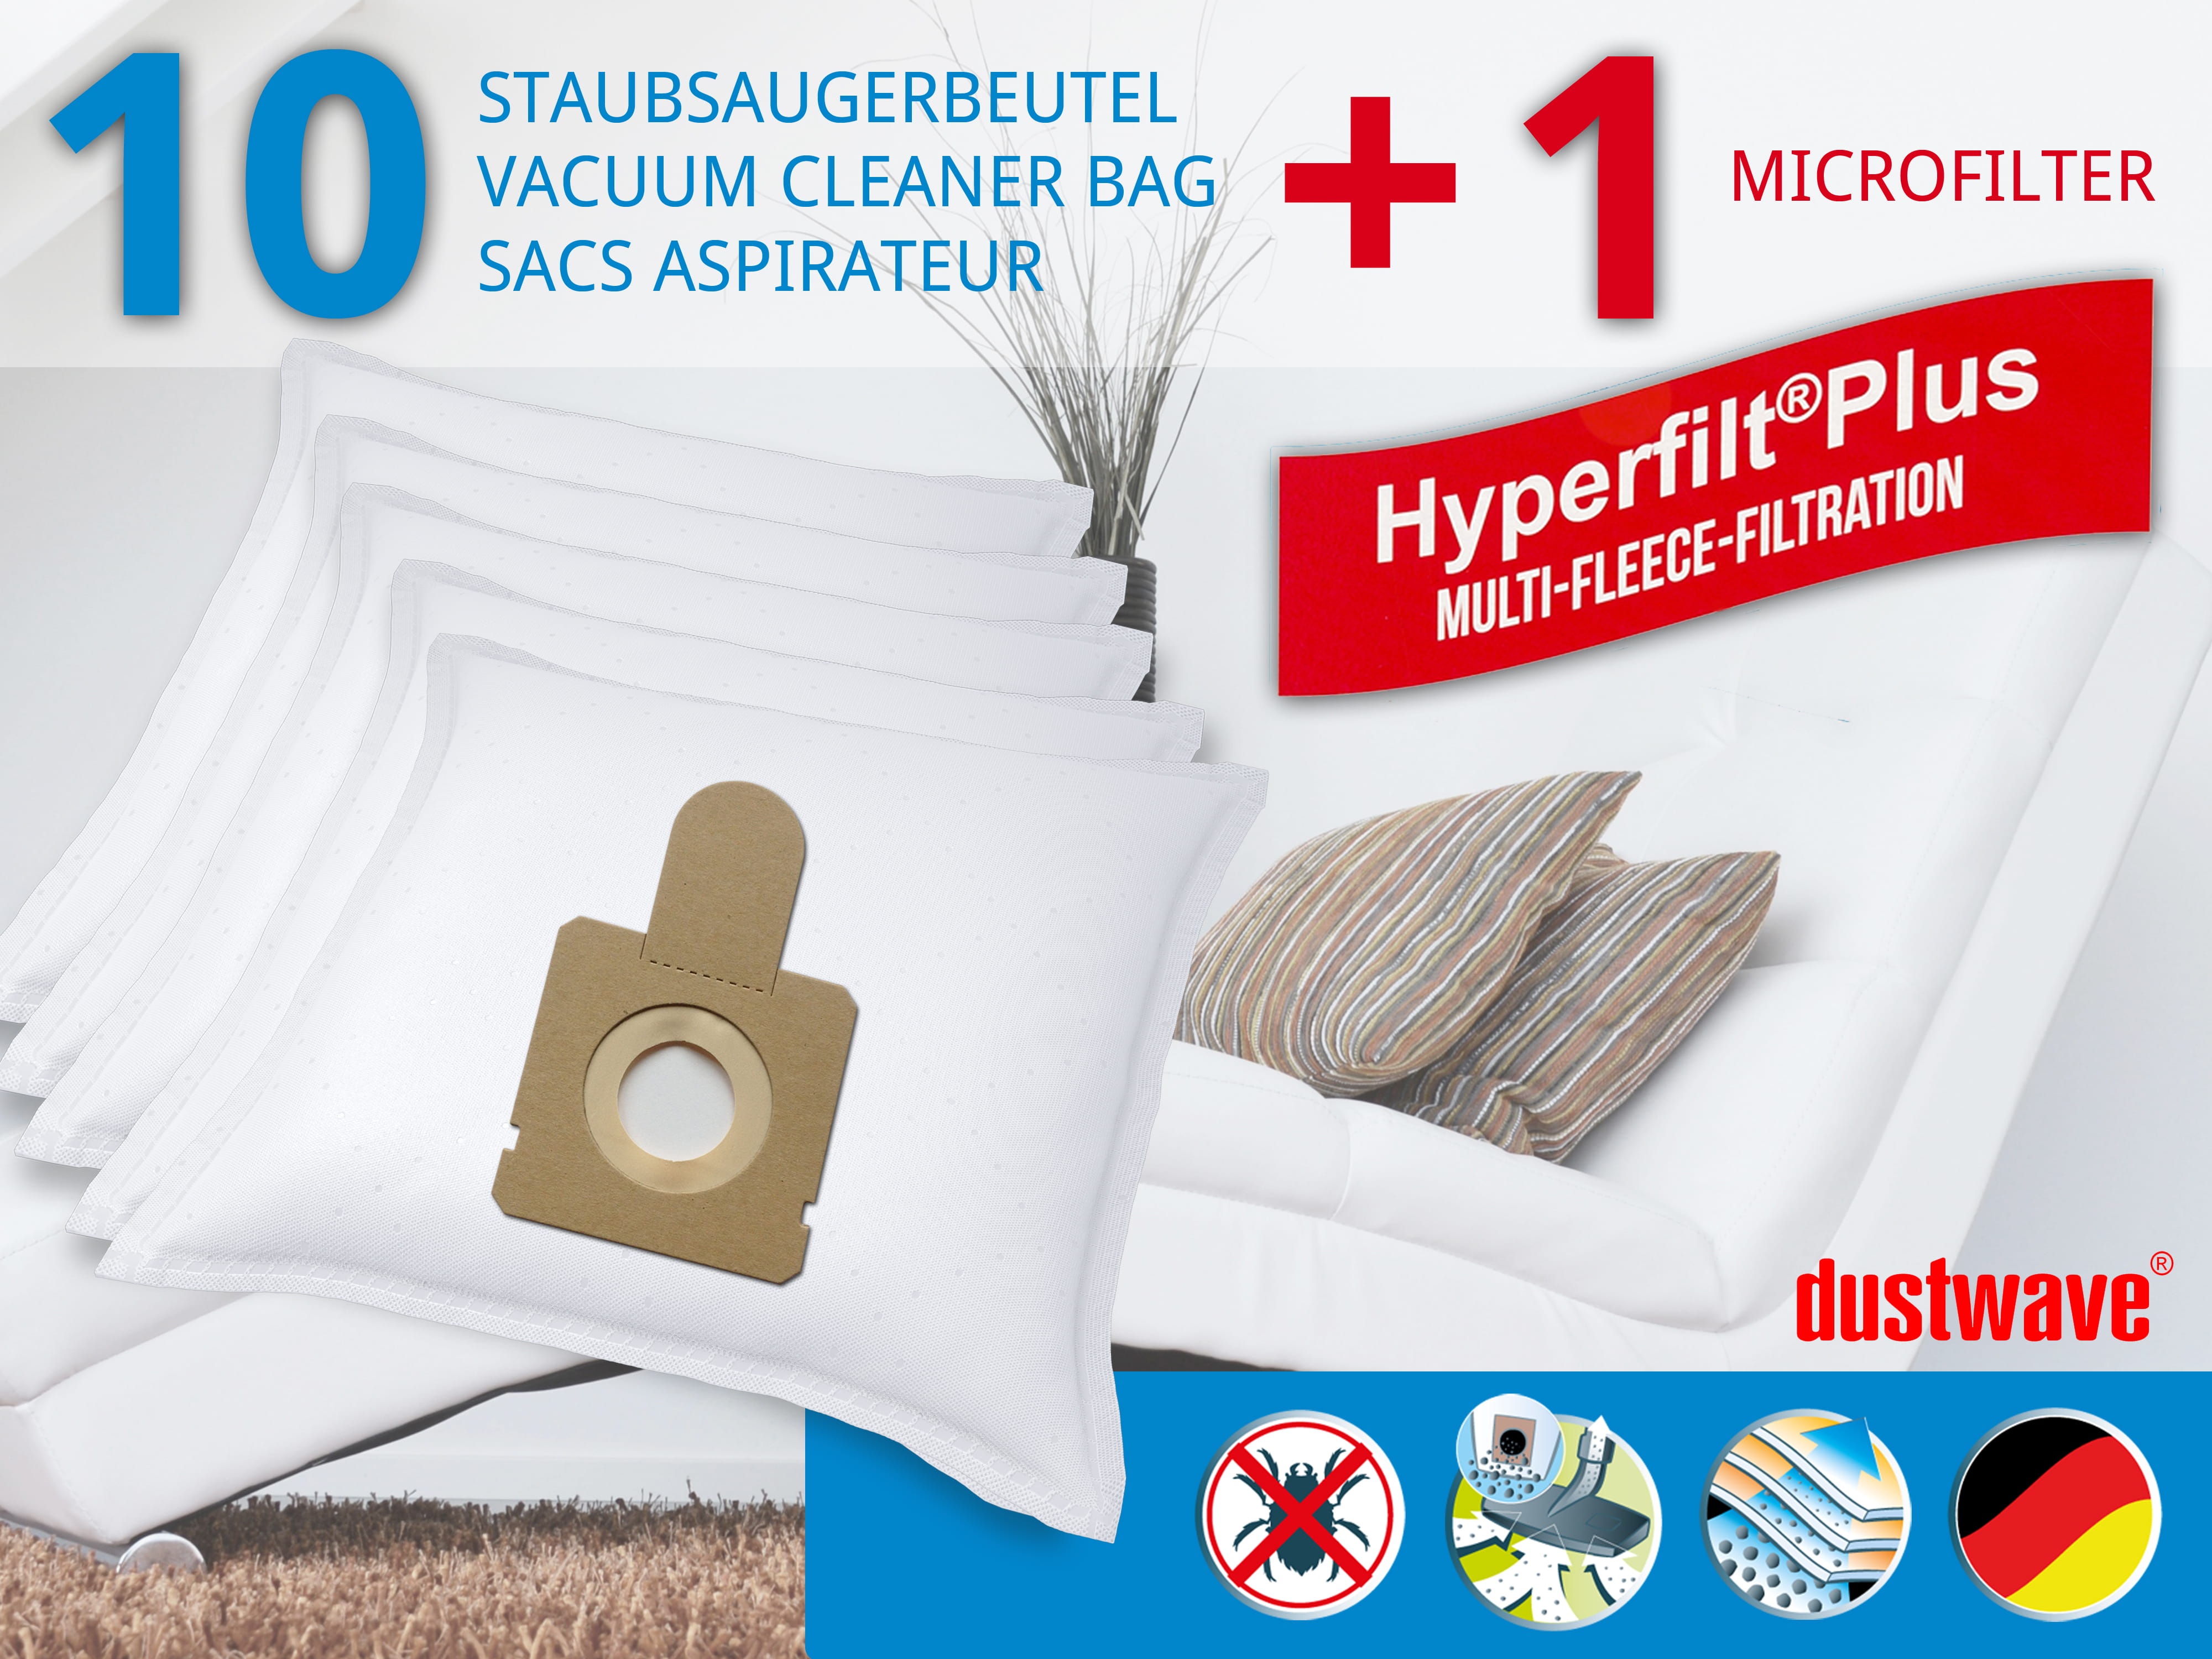 Dustwave® 10 Staubsaugerbeutel für Hoover TF 1815 011 FLASH - hocheffizient, mehrlagiges Mikrovlies mit Hygieneverschluss - Made in Germany